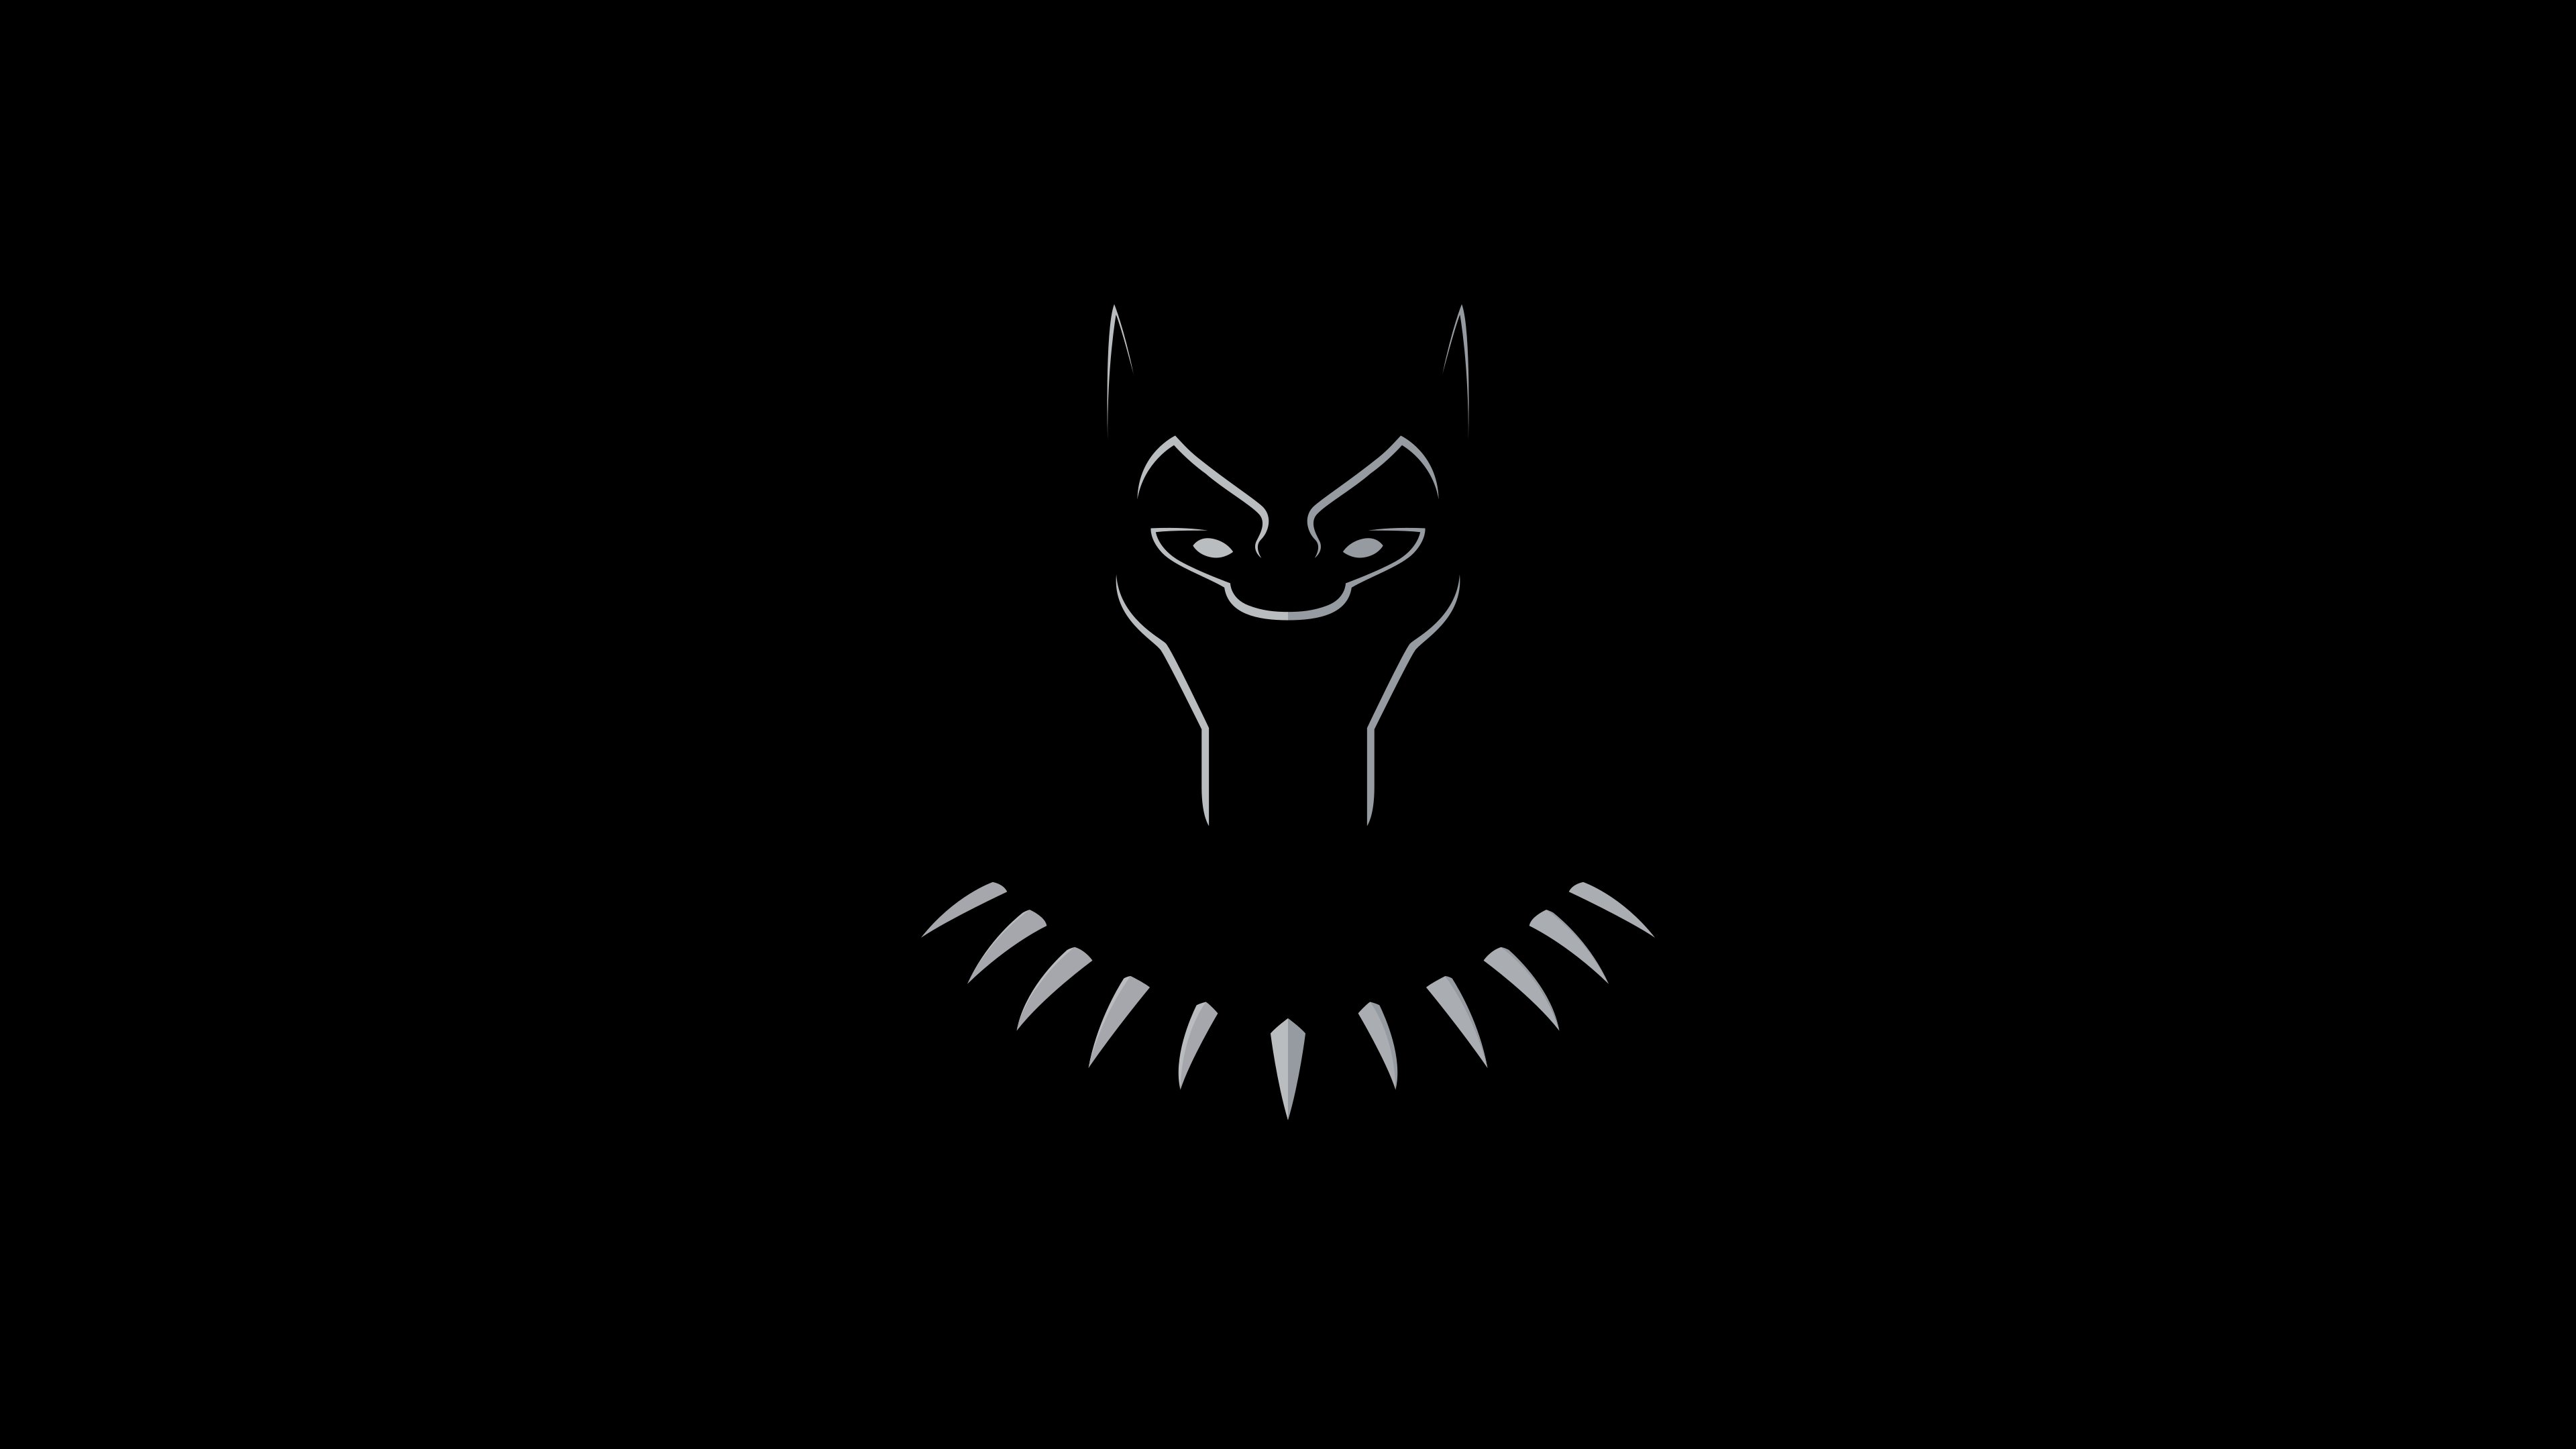 Rafael Fernandez On Black Panther Blackpanther Marvel